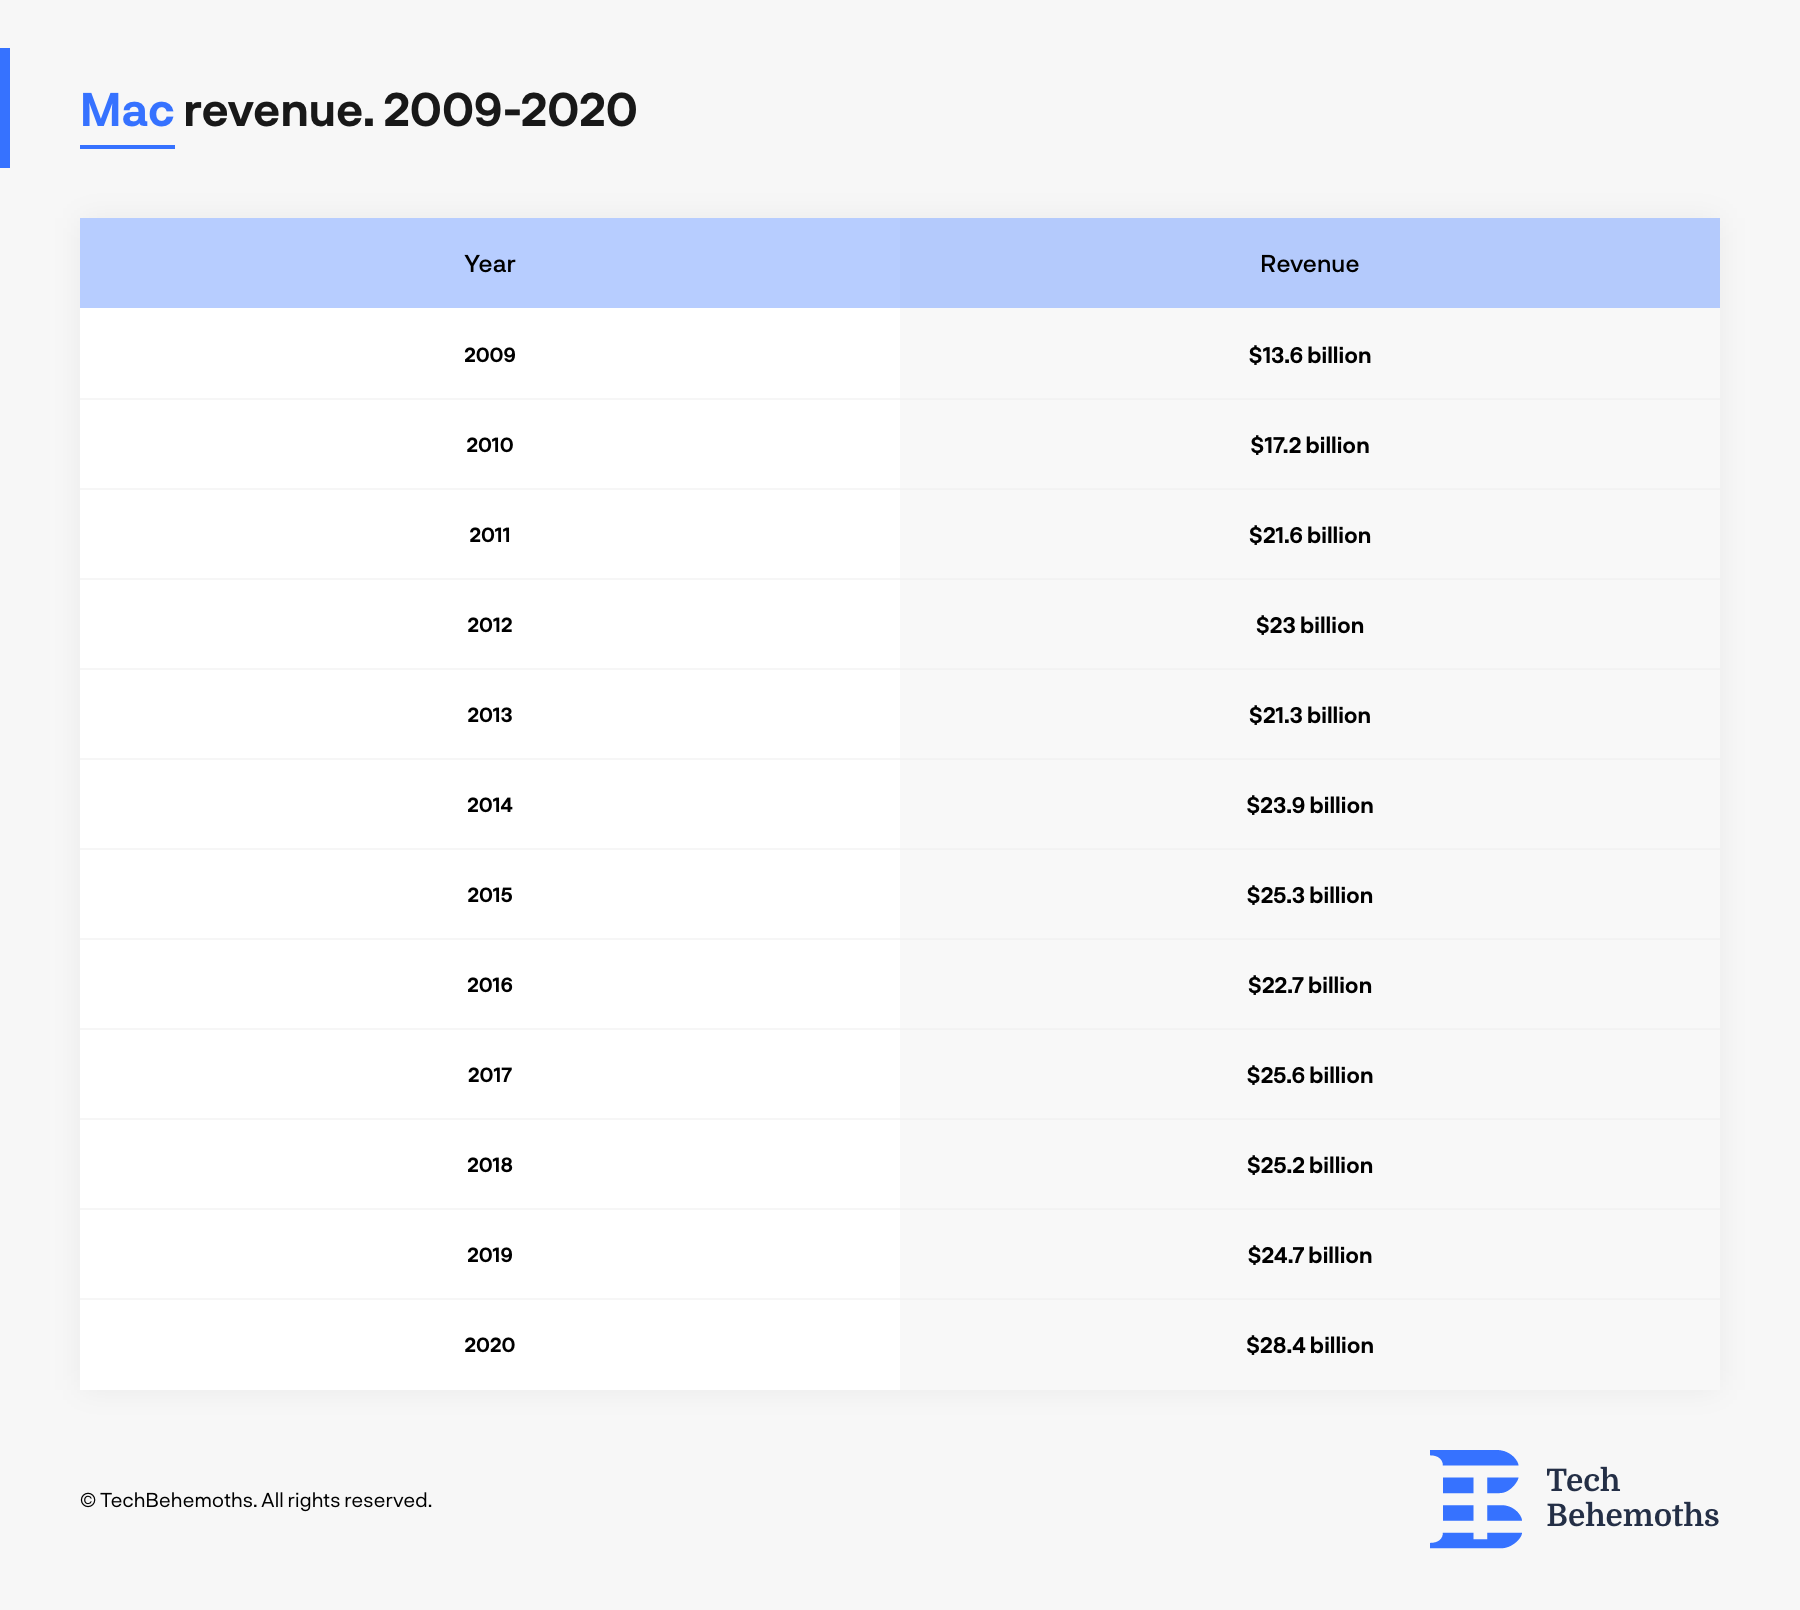 Mac_revenue_by_year